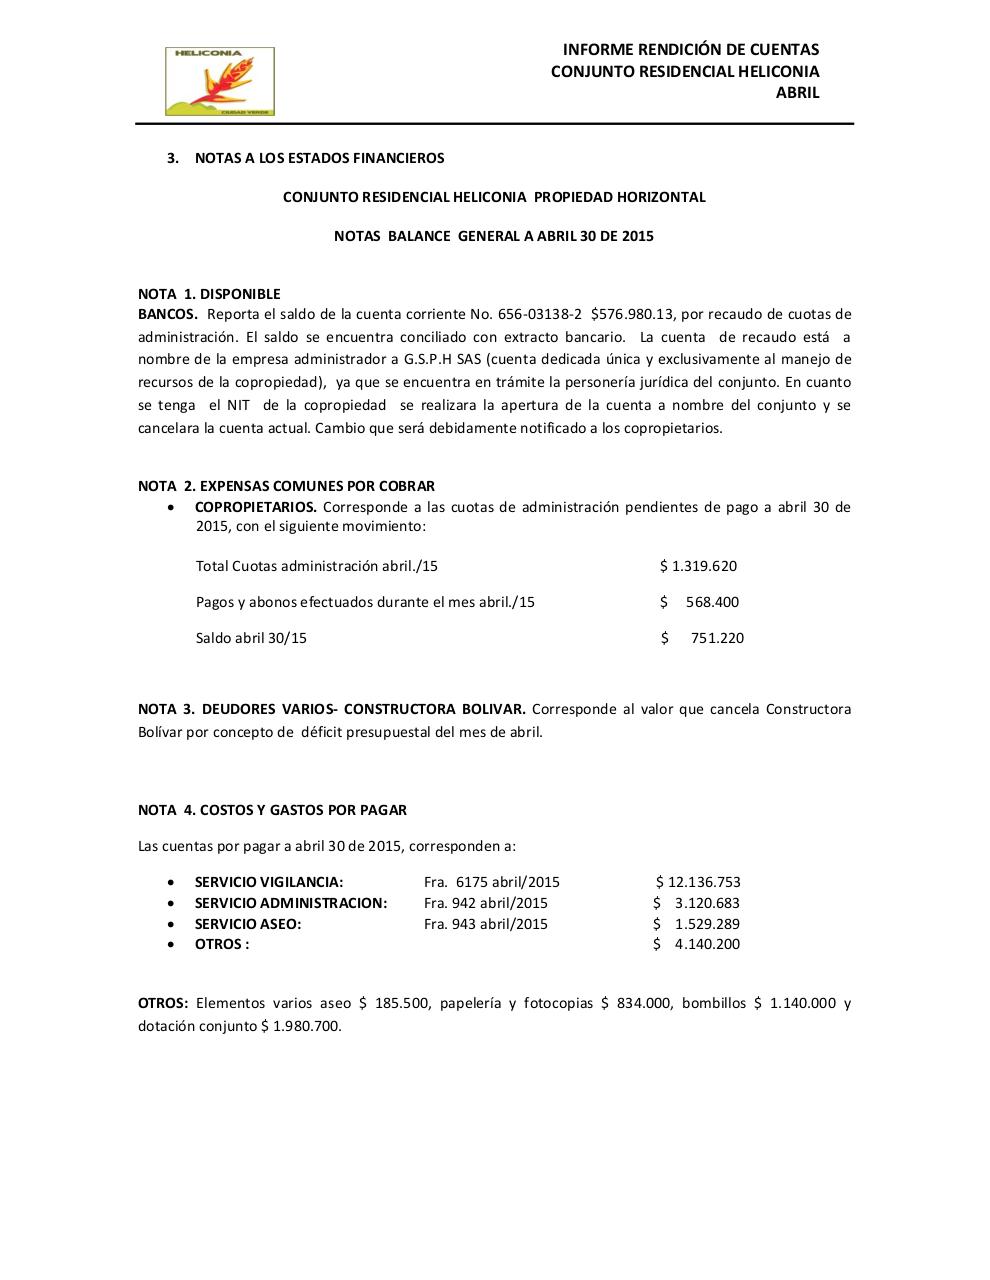 Vista previa del archivo PDF informe-de-rendicion-de-cuentas-heliconia-abril.pdf